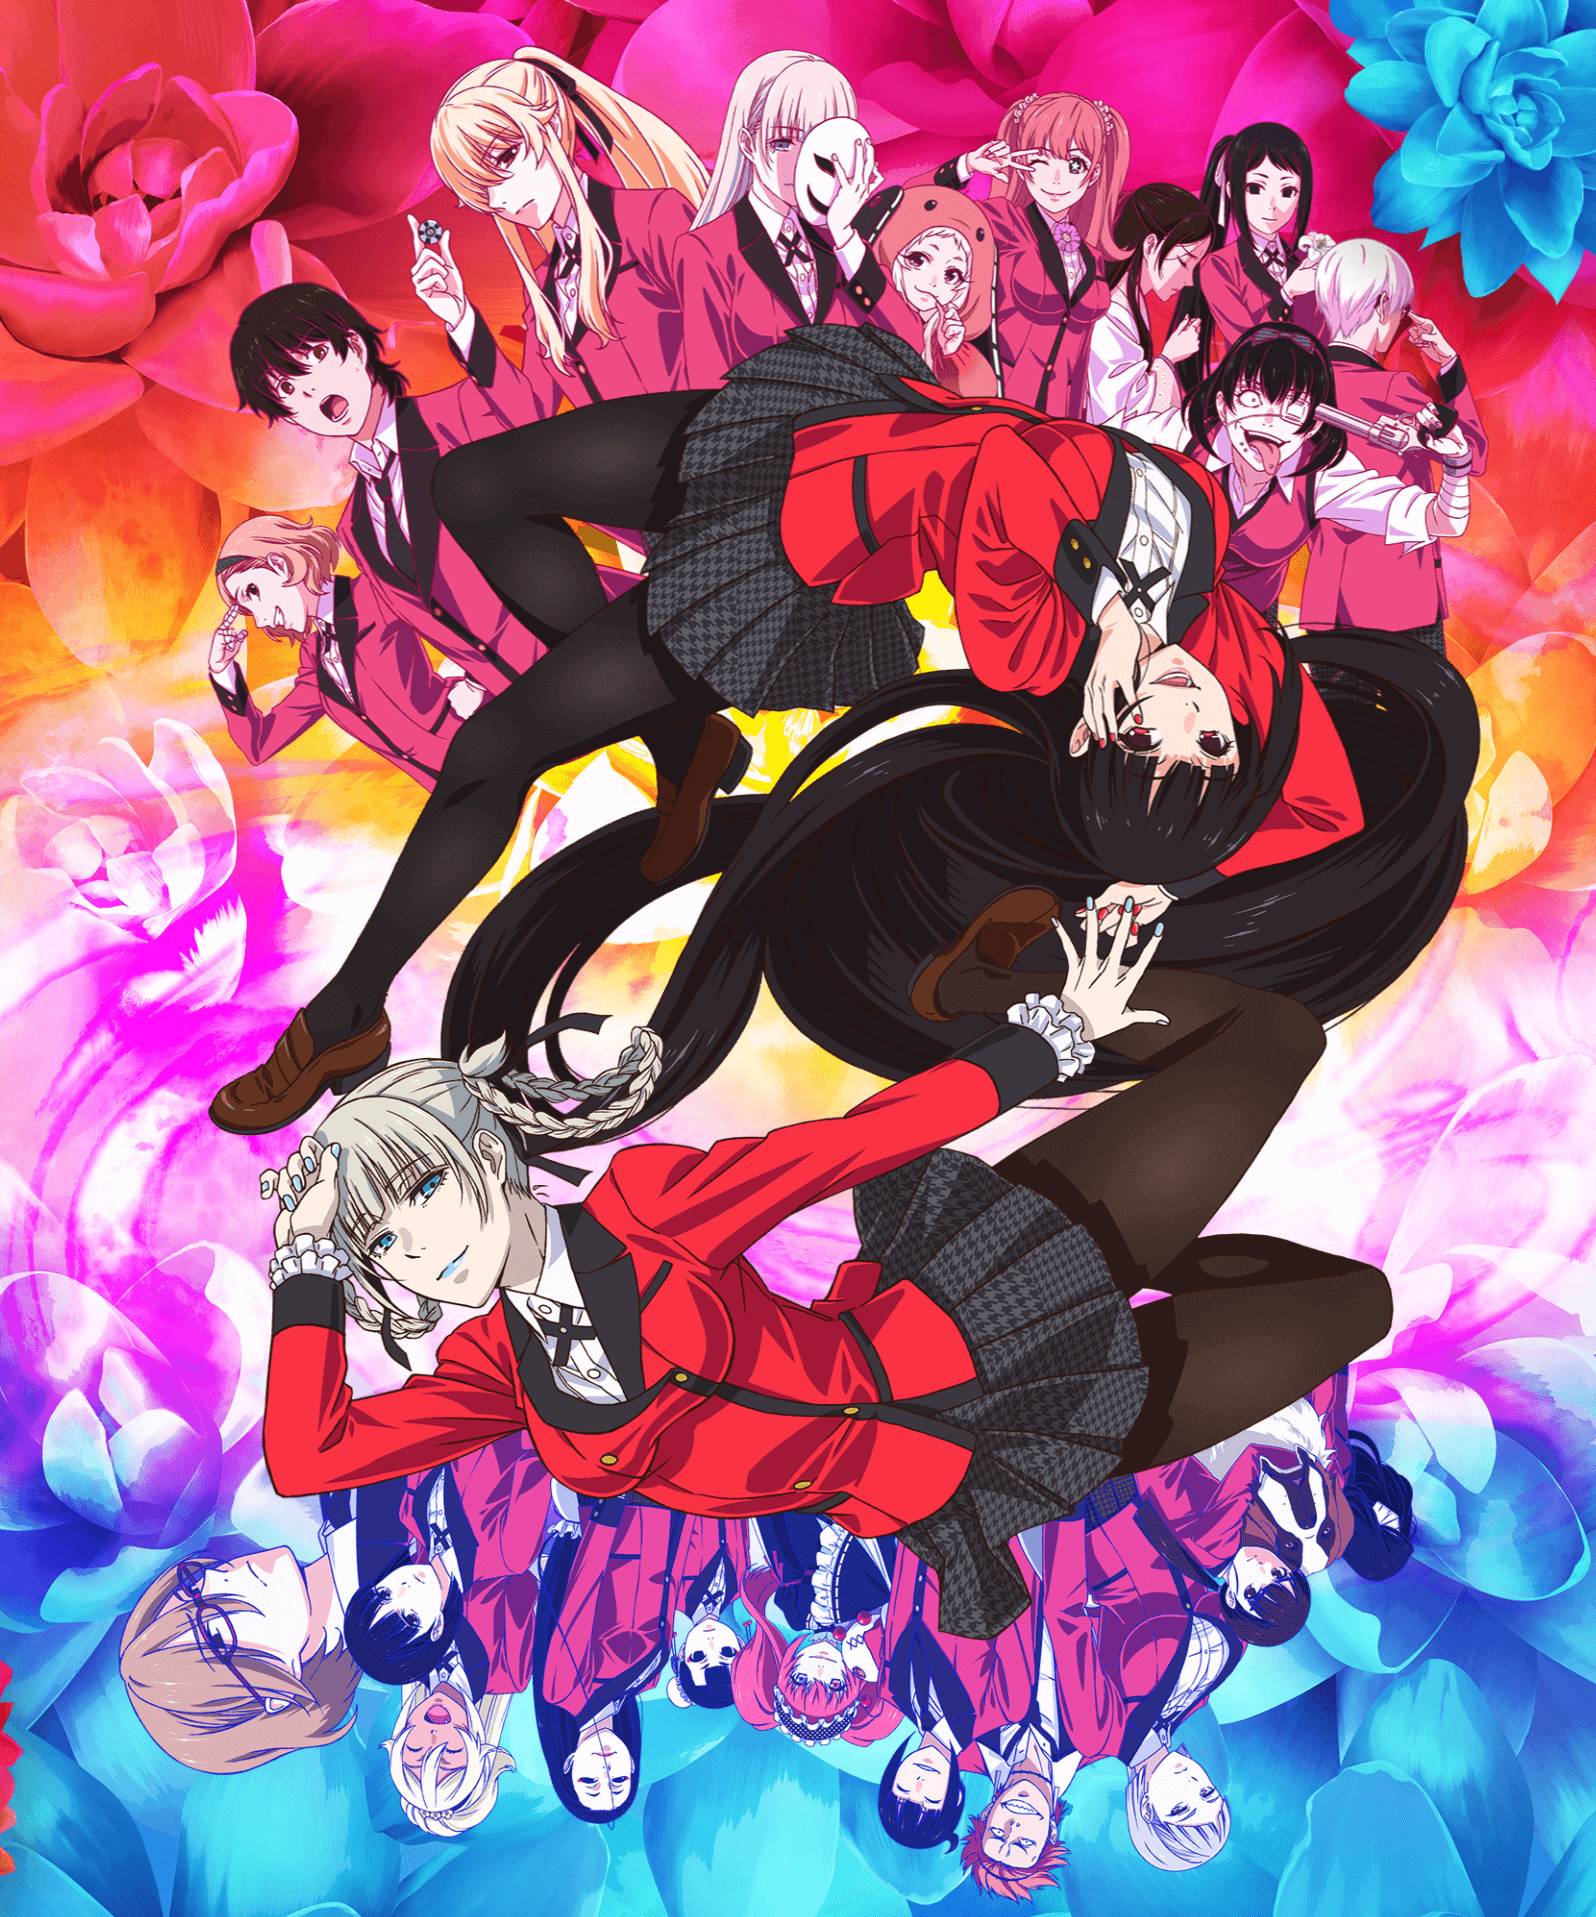 Kakegurui S2 anime confirmed for January 2019 : r/anime